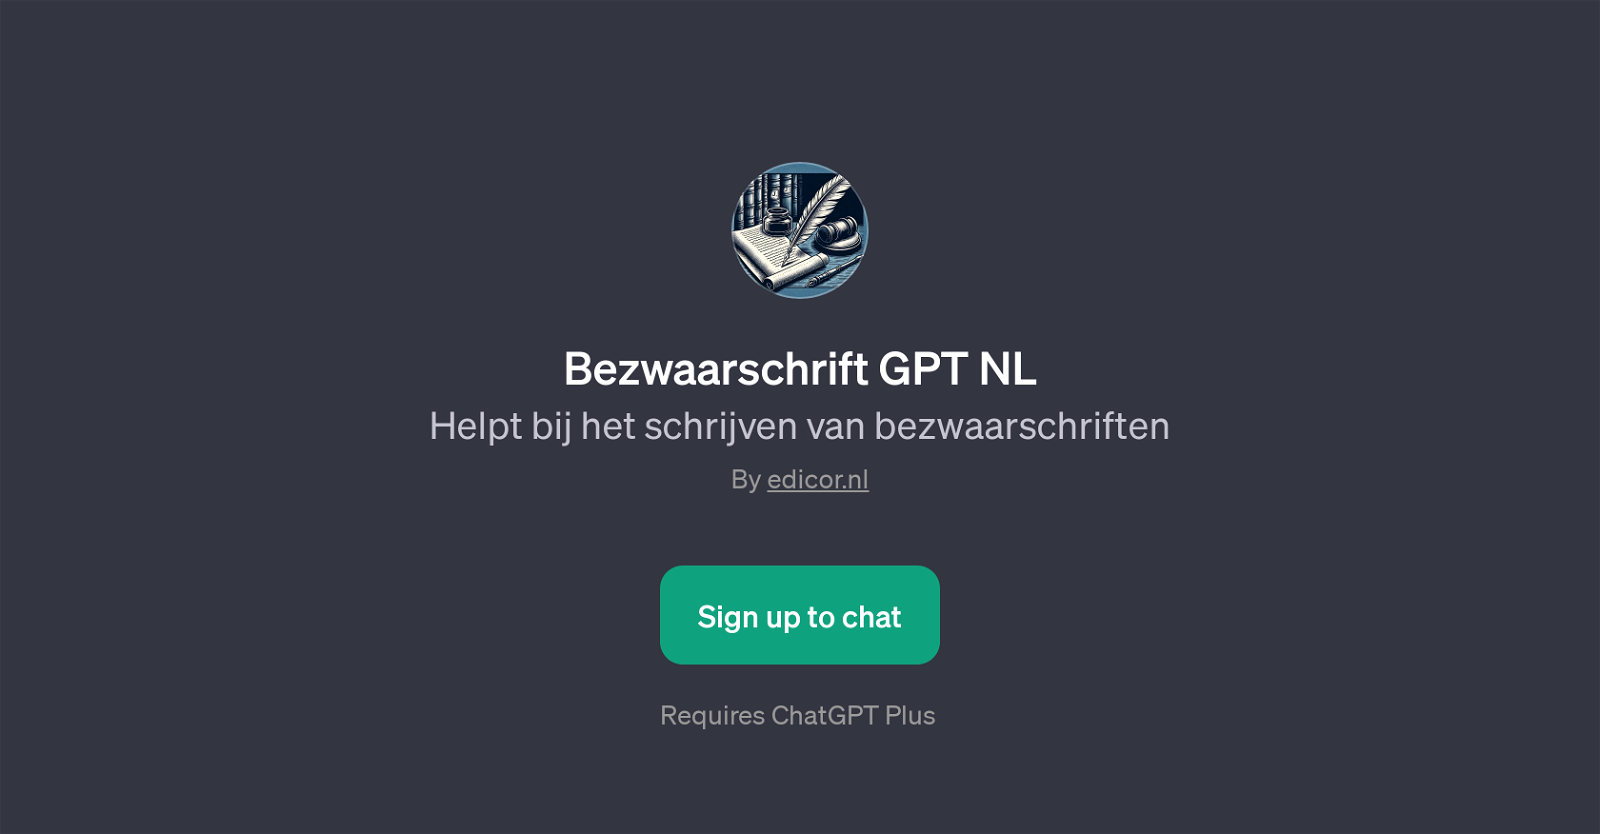 Bezwaarschrift GPT NL website